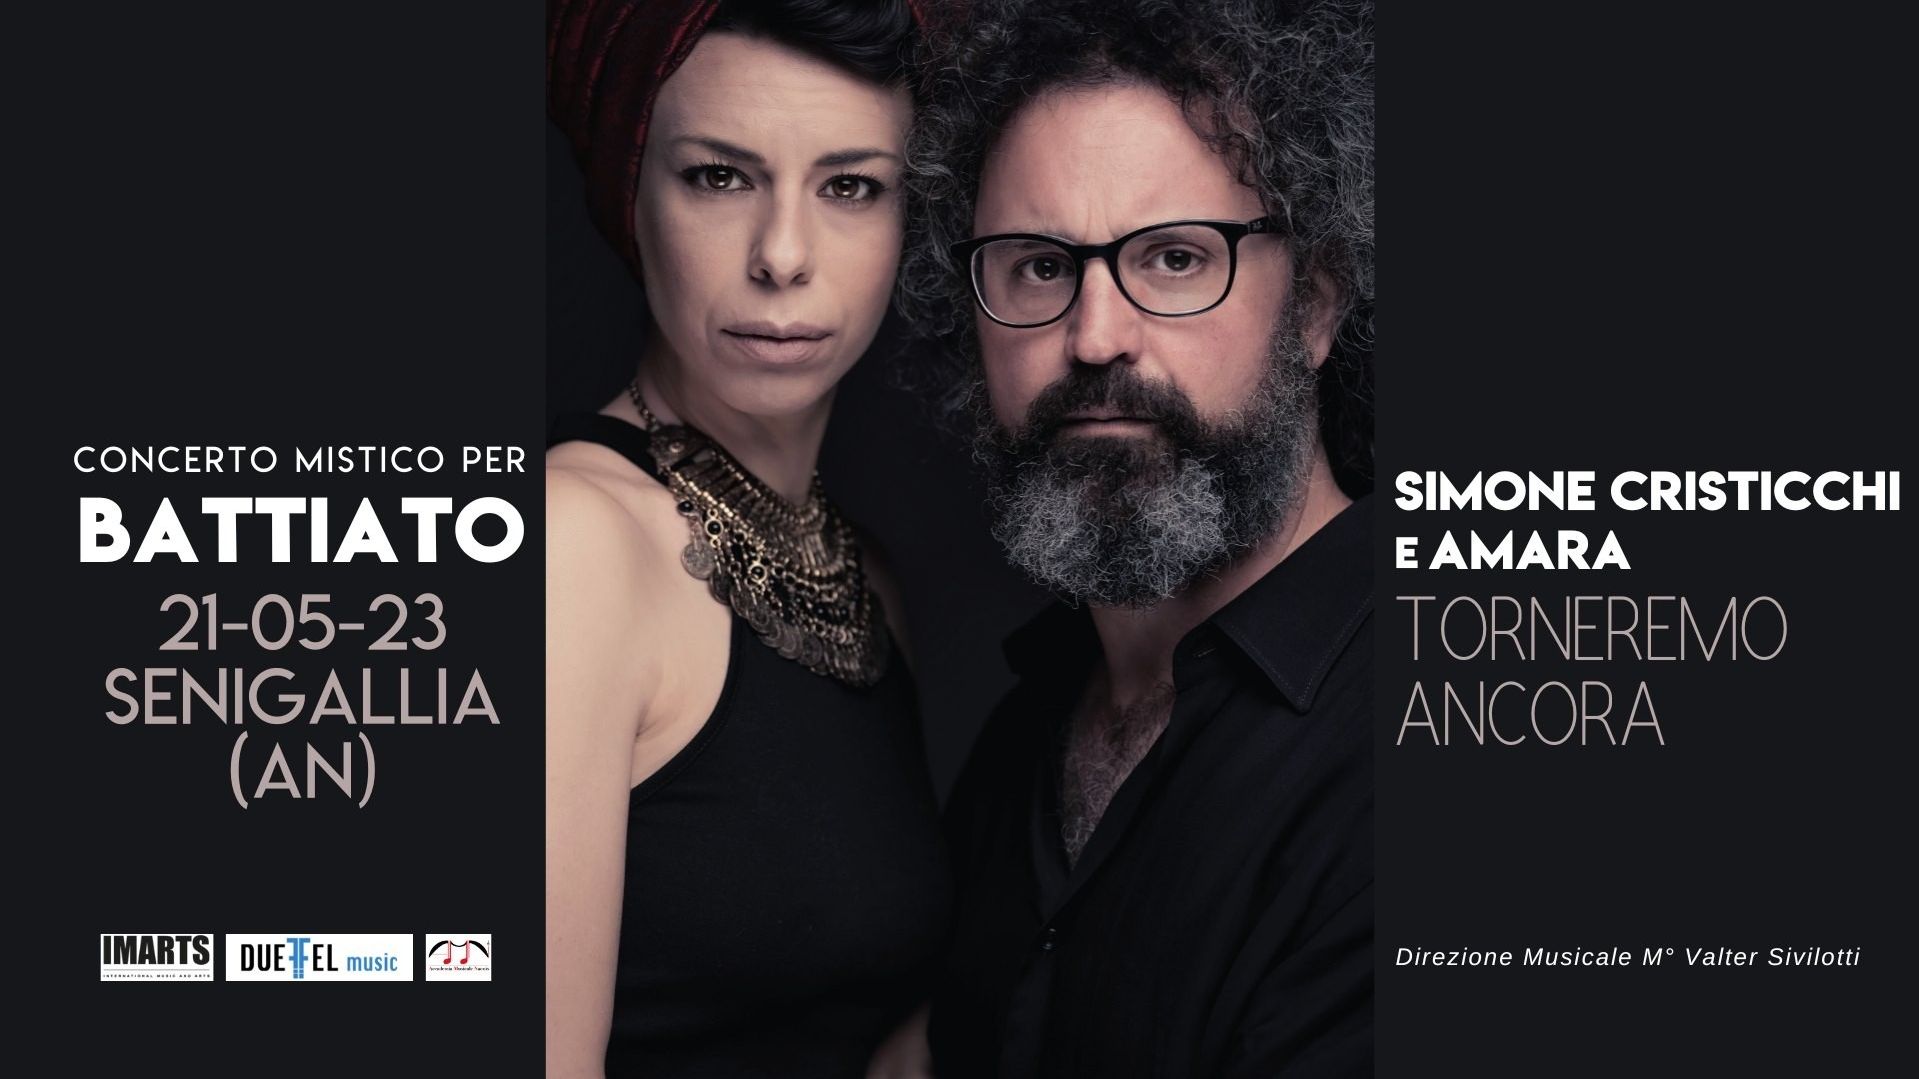 Simone Cristicchi e Amara | Torneremo ancora. Concerto mistico per Battiato